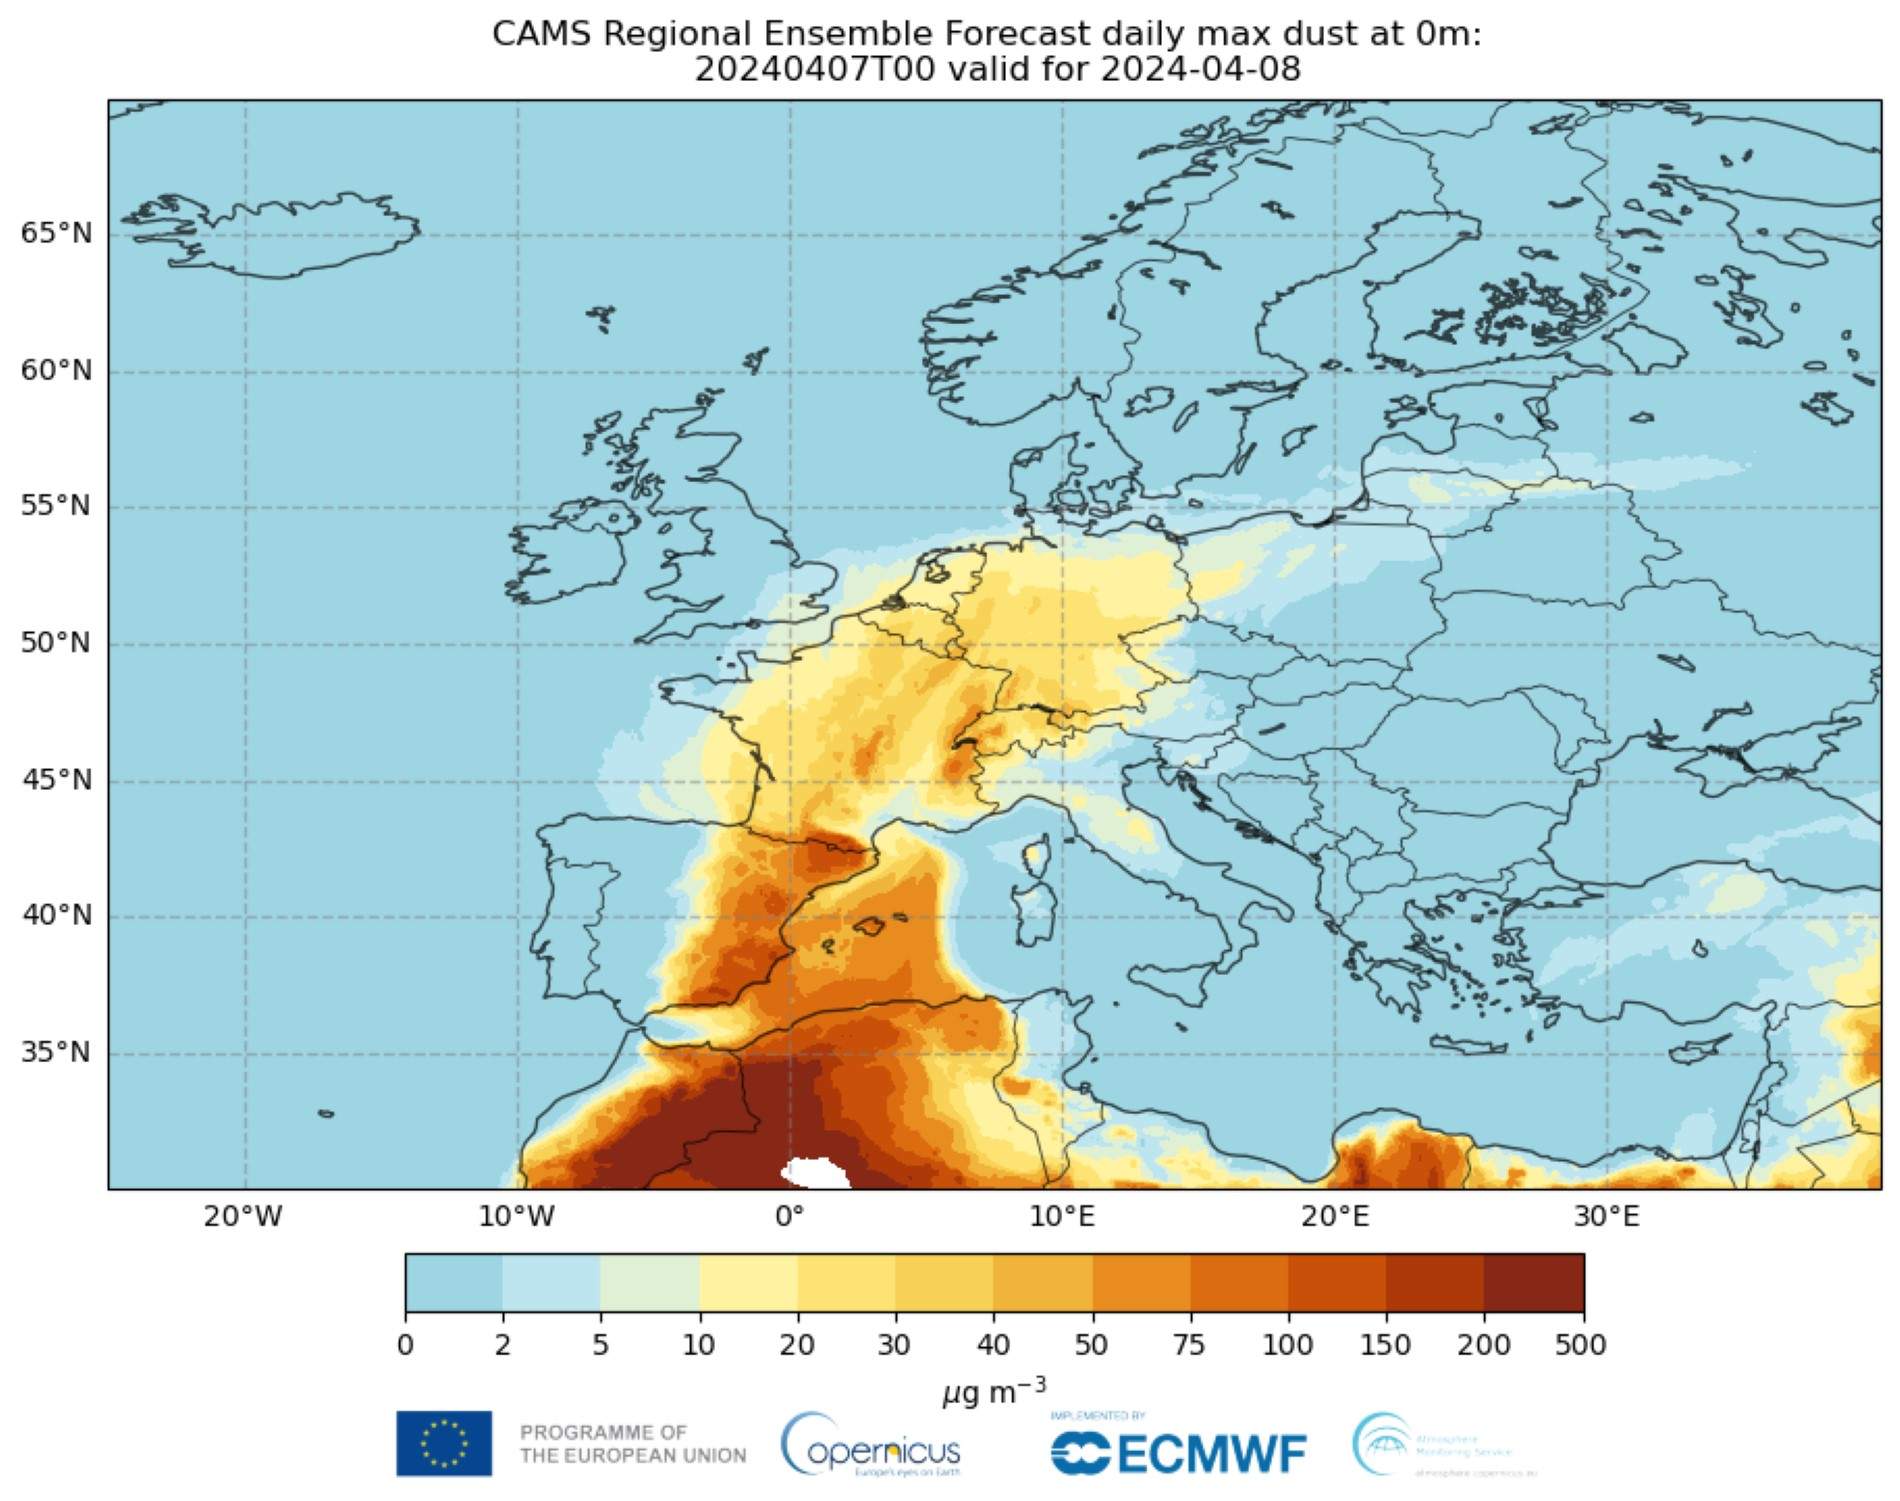 L'observatori Copernicus alerta que els episodis de pols sahariana augmentaran a Catalunya